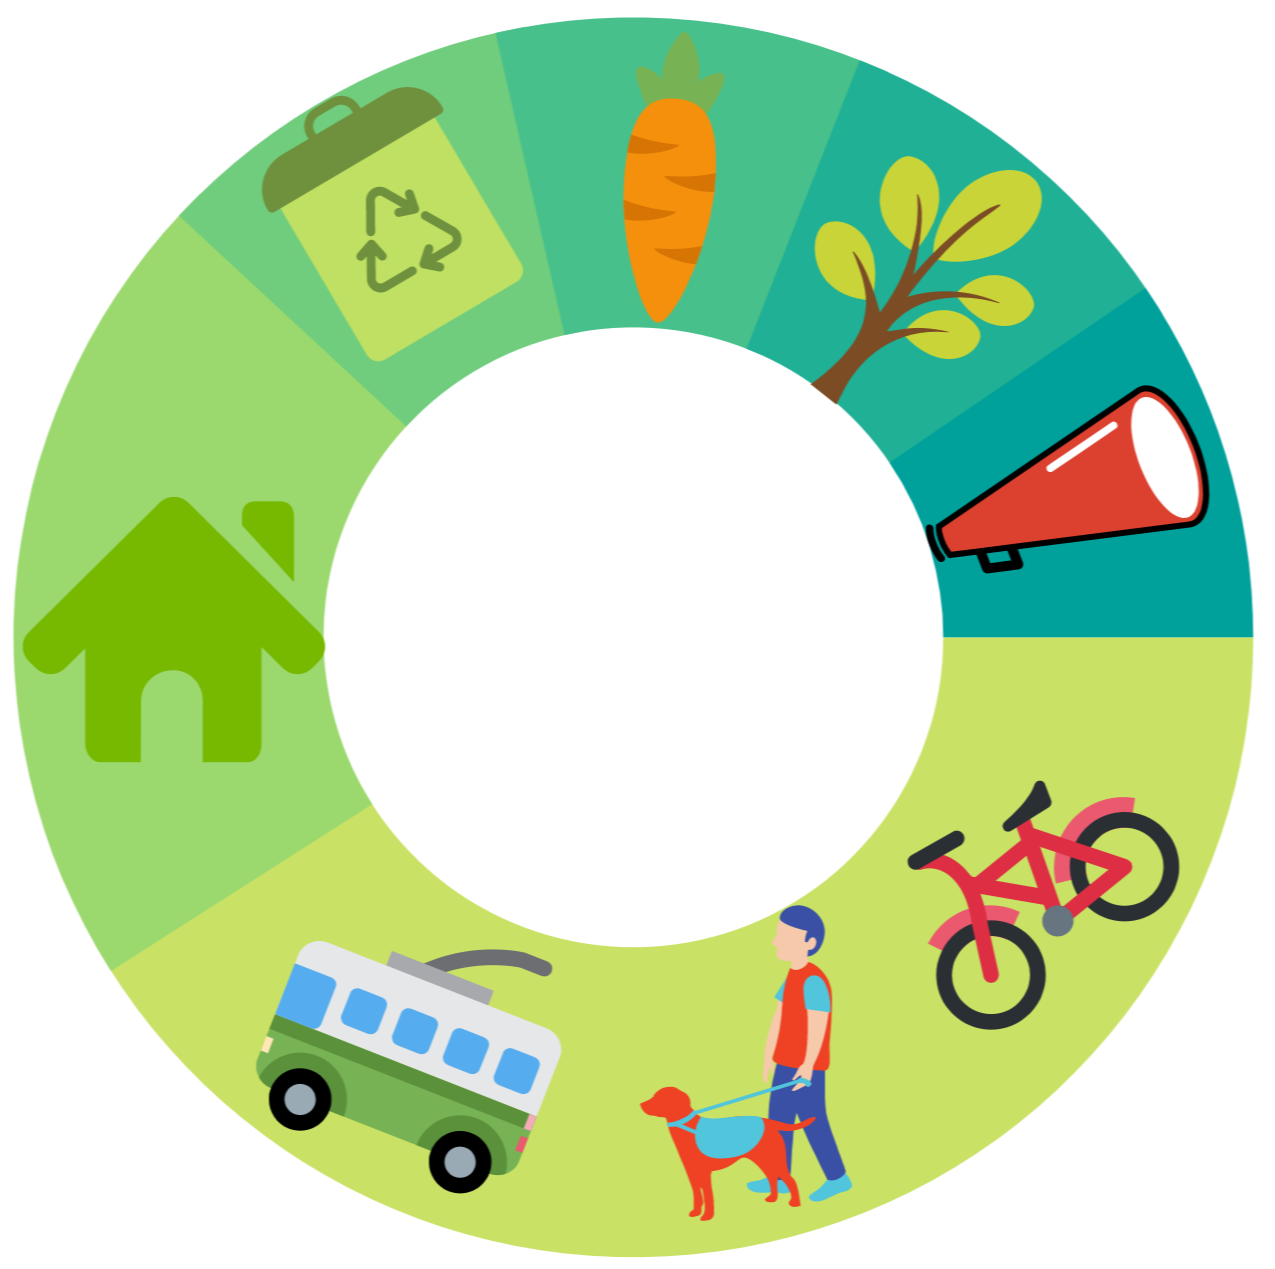 Un design circulaire avec des icônes en lien avec le changement climatique : un téléphone à haut-parleur, un arbre, une carotte, une poubelle de recyclage, une maison, un bus, un humain promenant un chien et un vélo. 